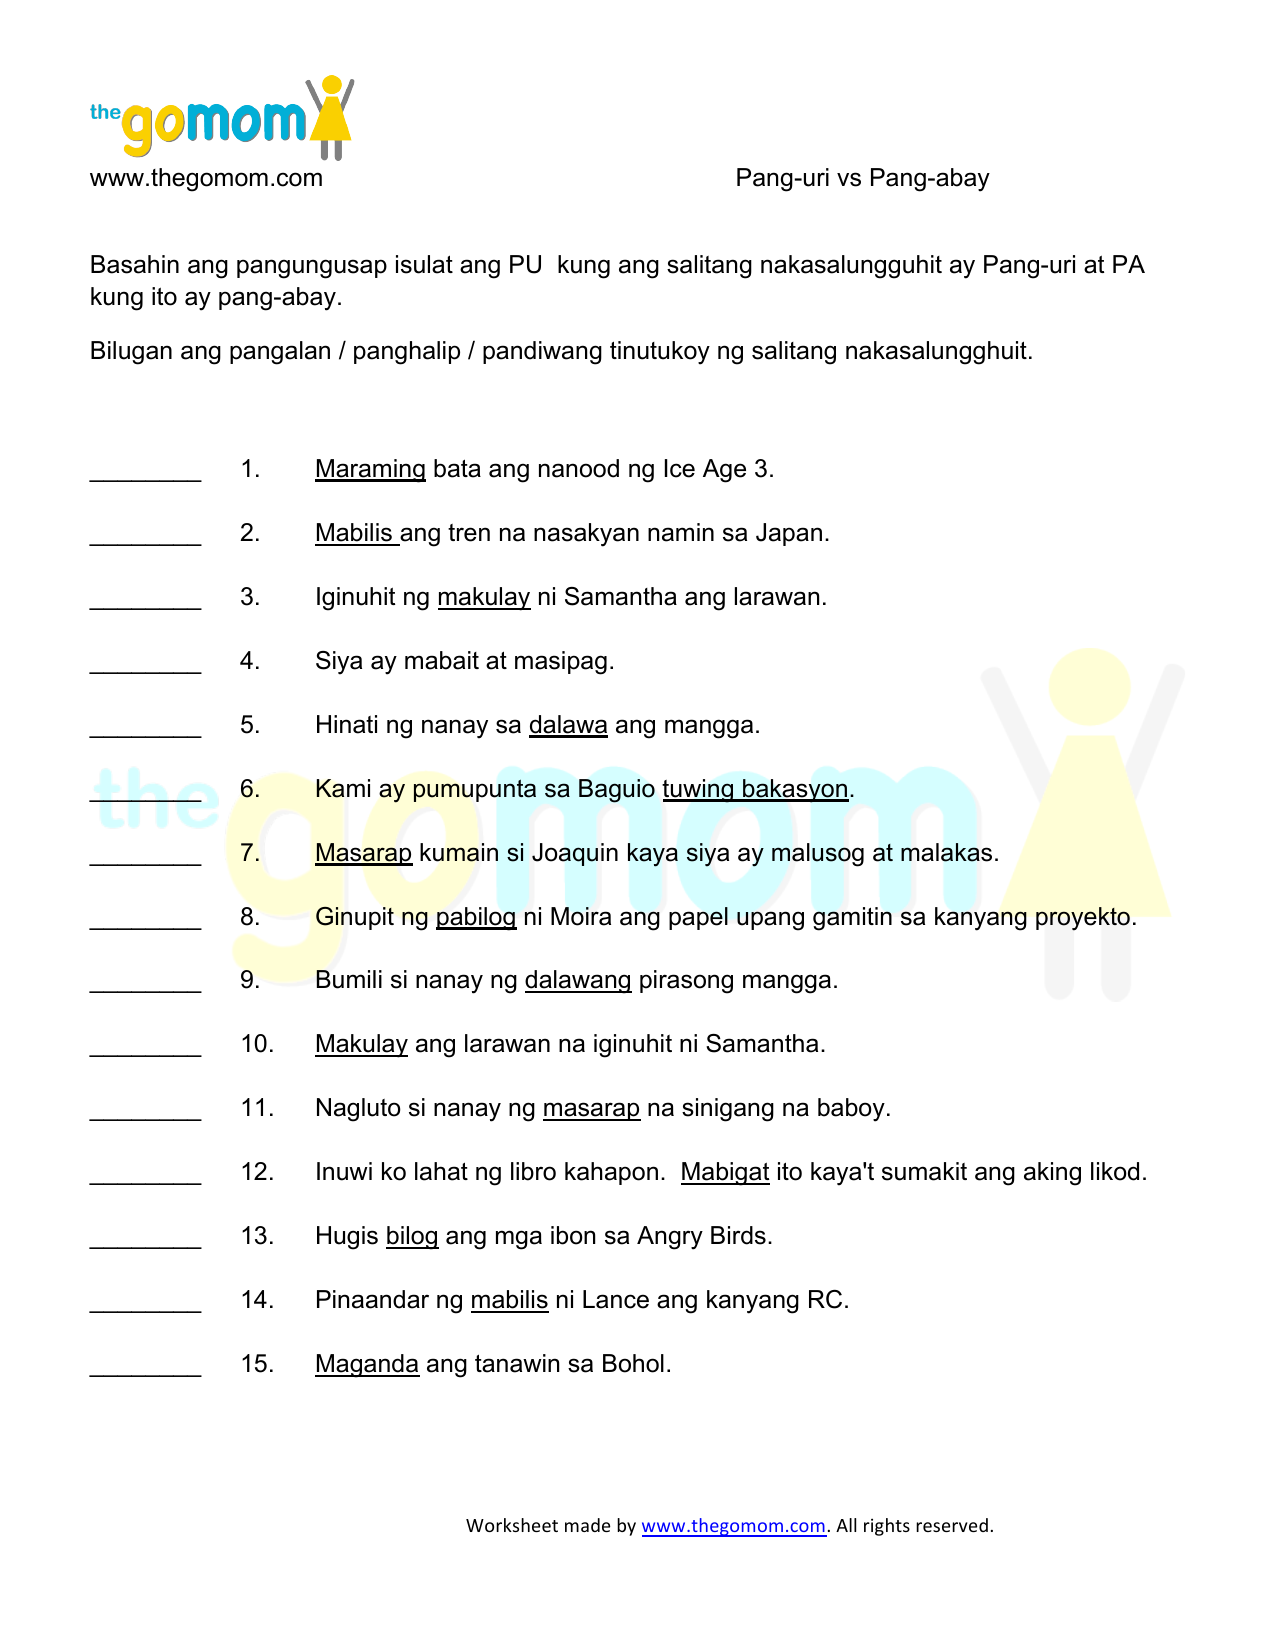 Worksheet On Uri Ng Mga Pang Abay Grade 9 Abayvlog - kulturaupice